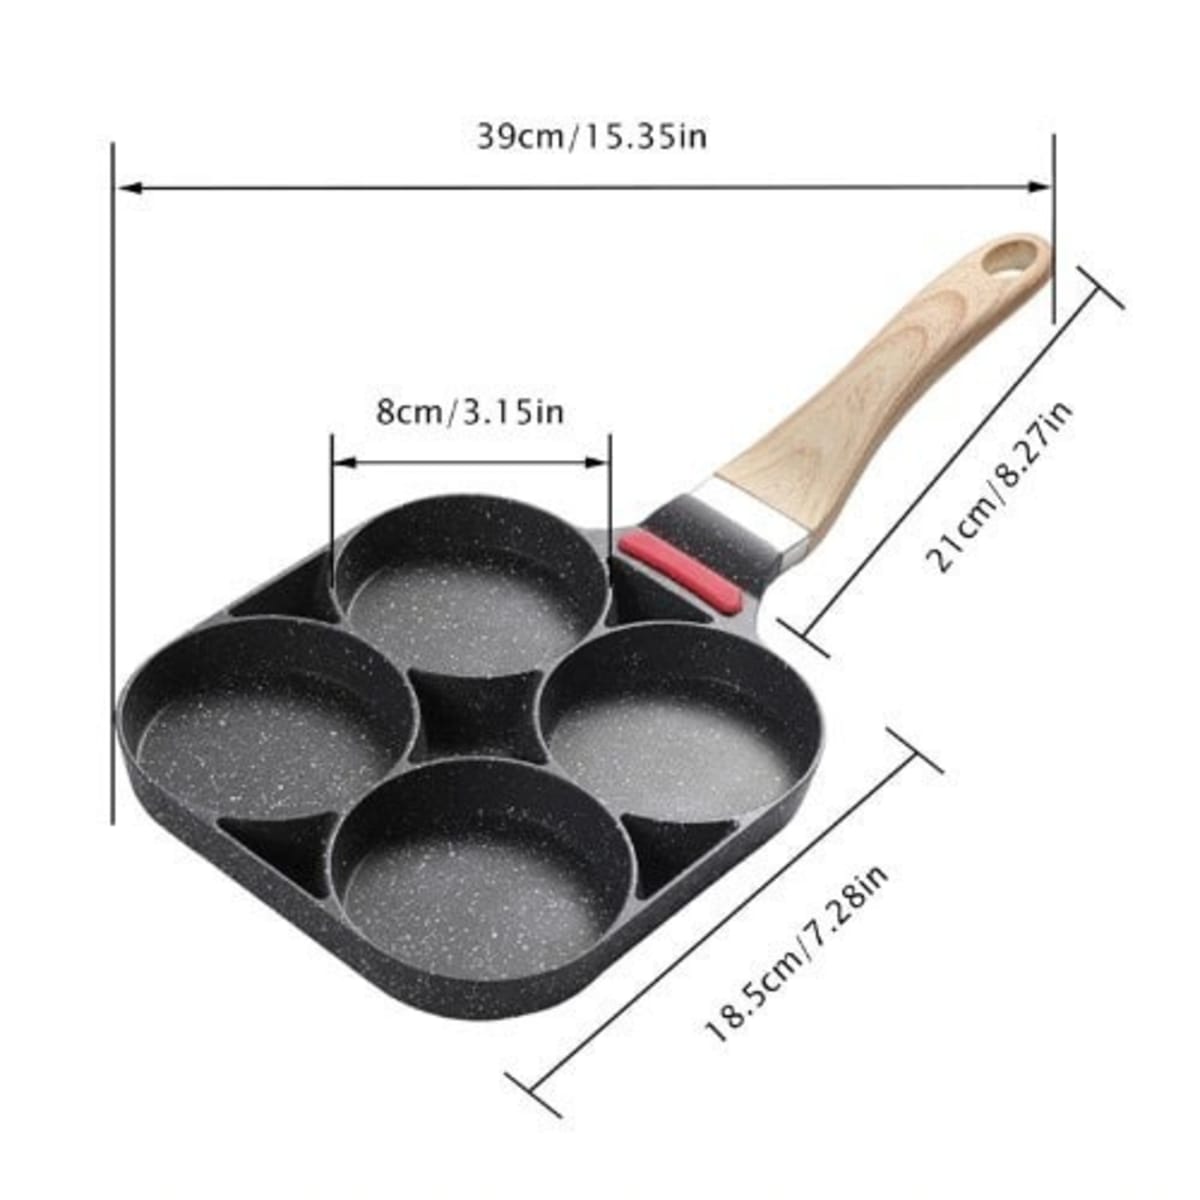 Aluminum 4-Hole Frying Pan